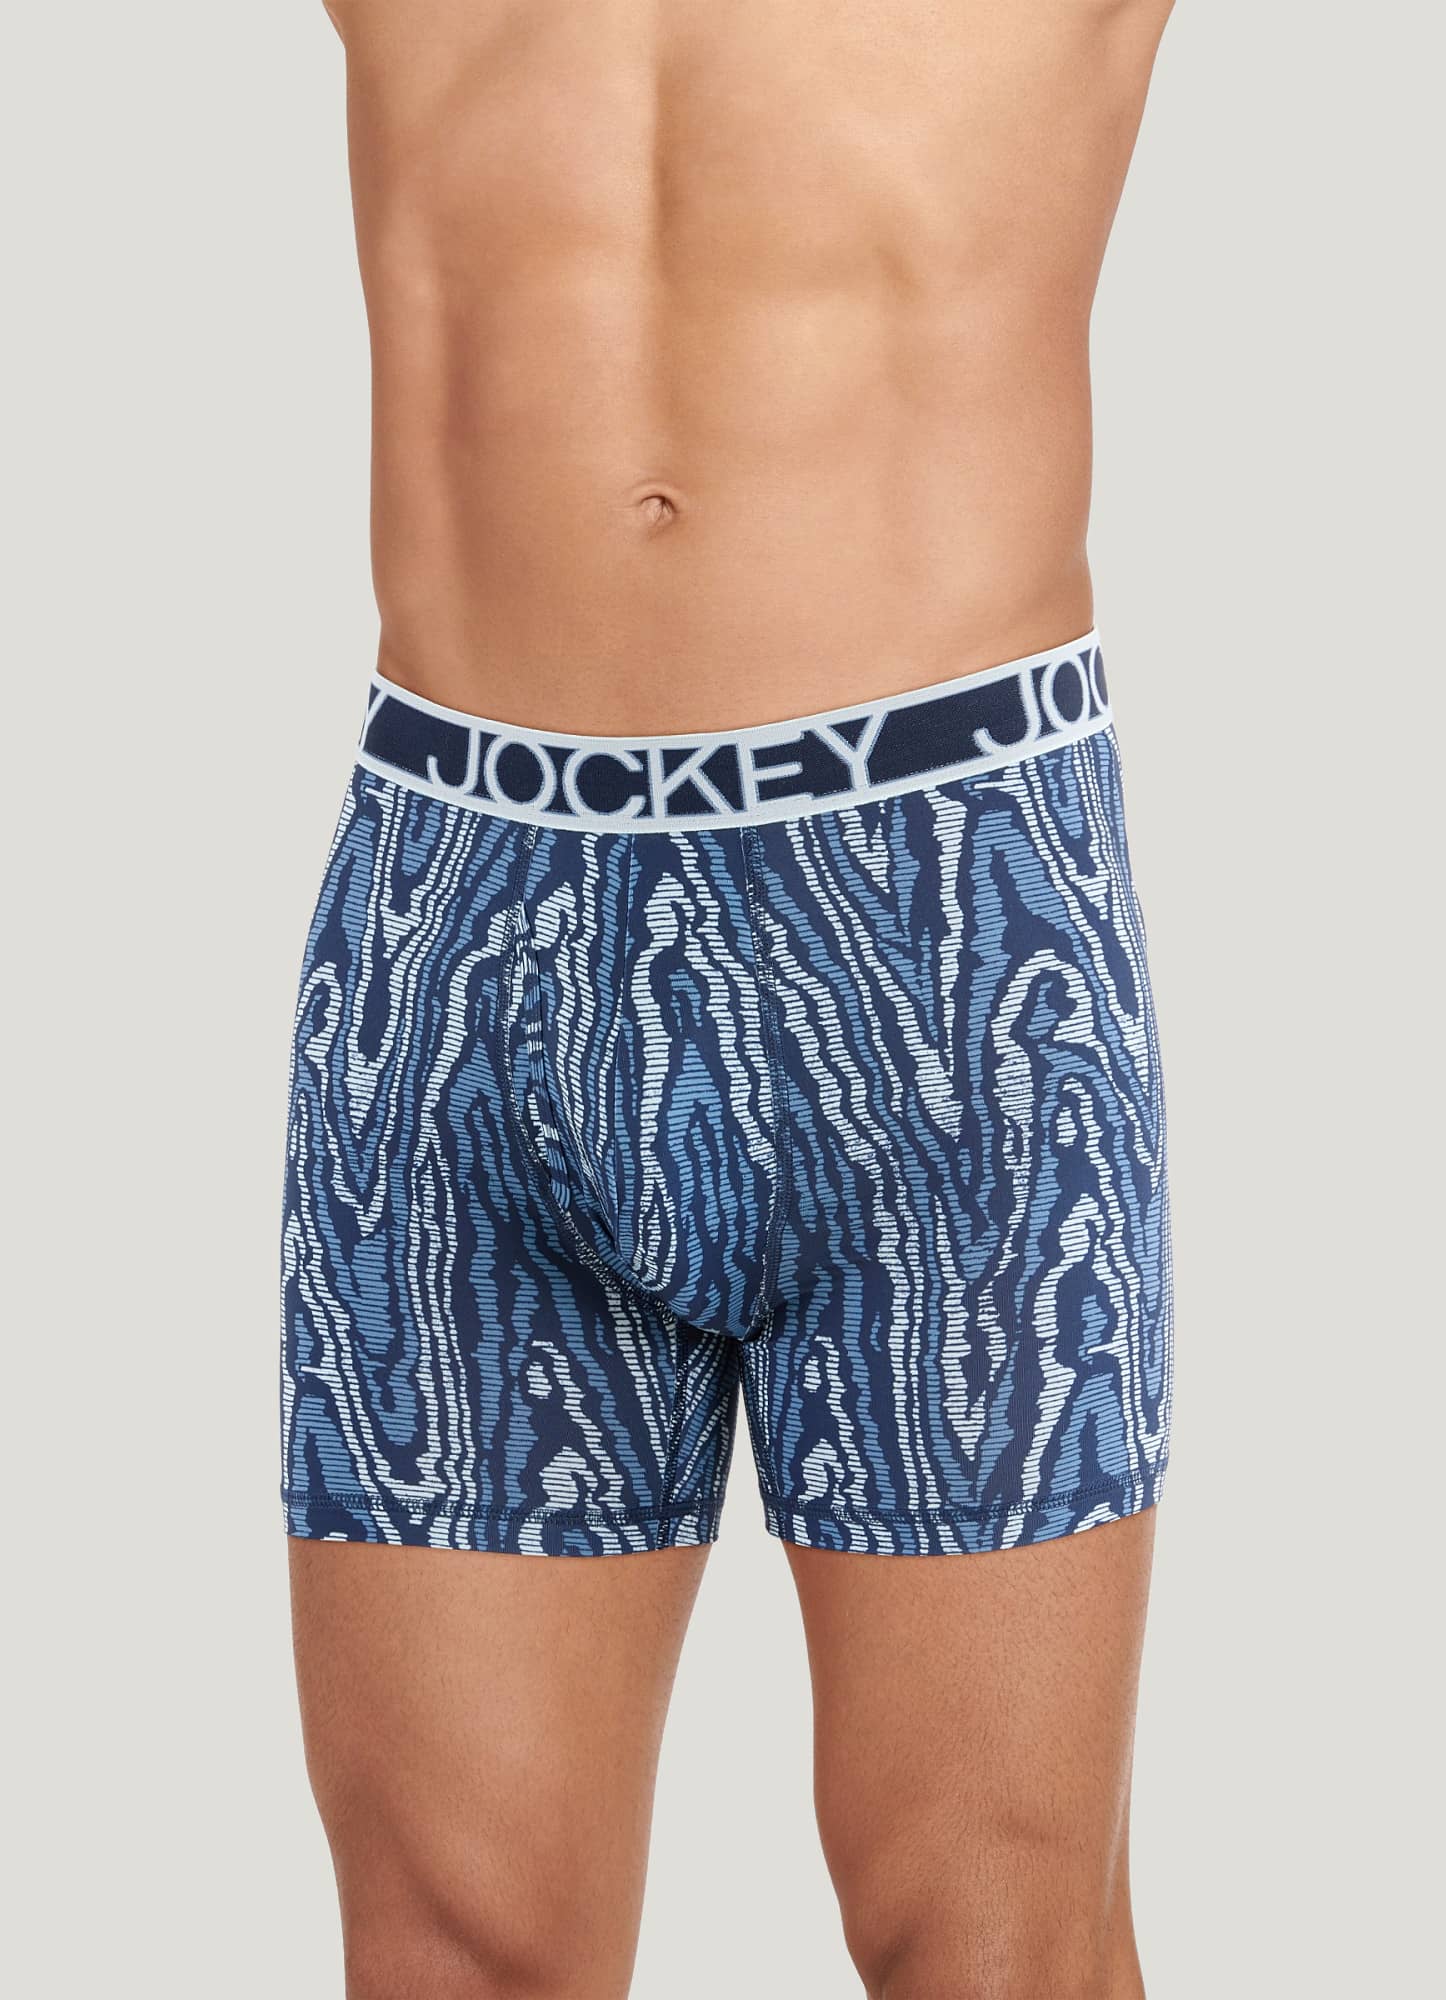 Jockey Men's Travel Quick Dry Briefs Underwear 9795 2XL Was for sale online